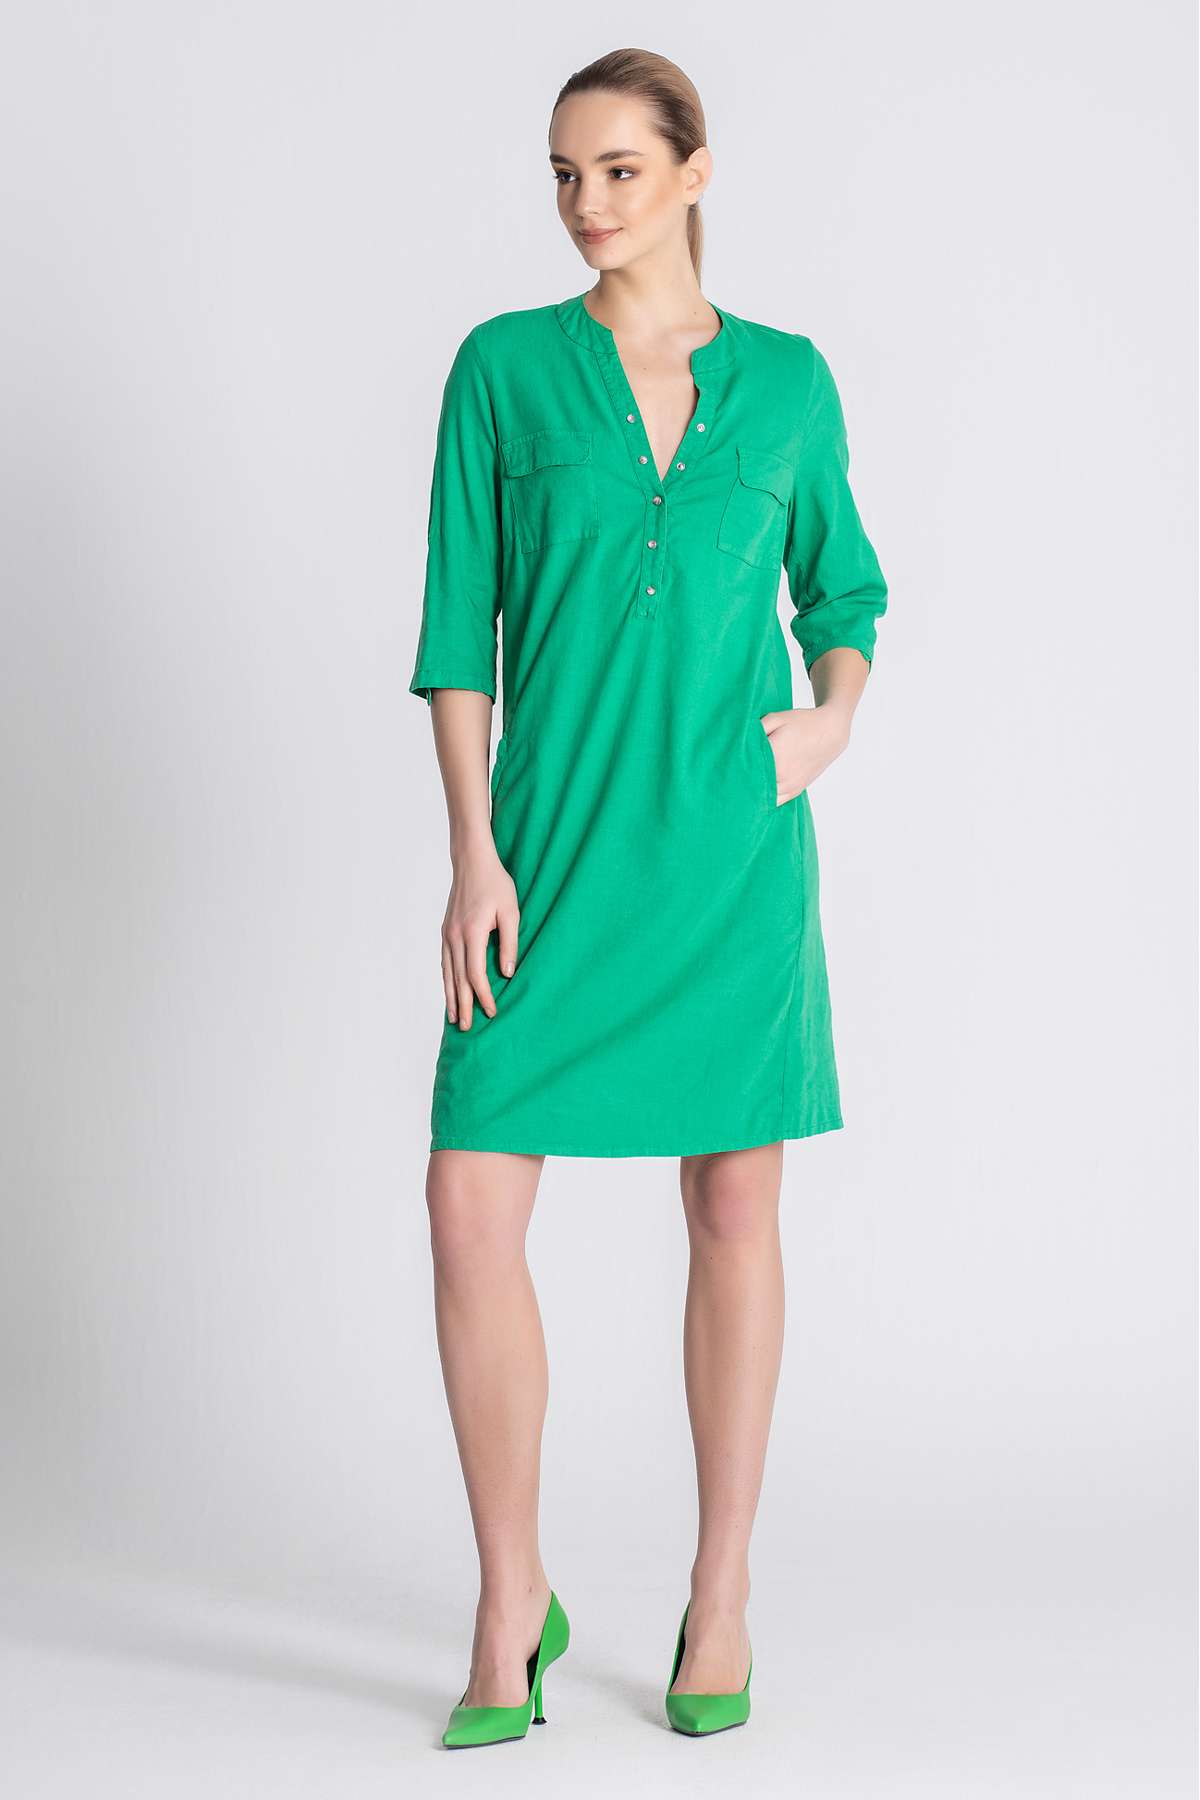 Ella Green Dress front